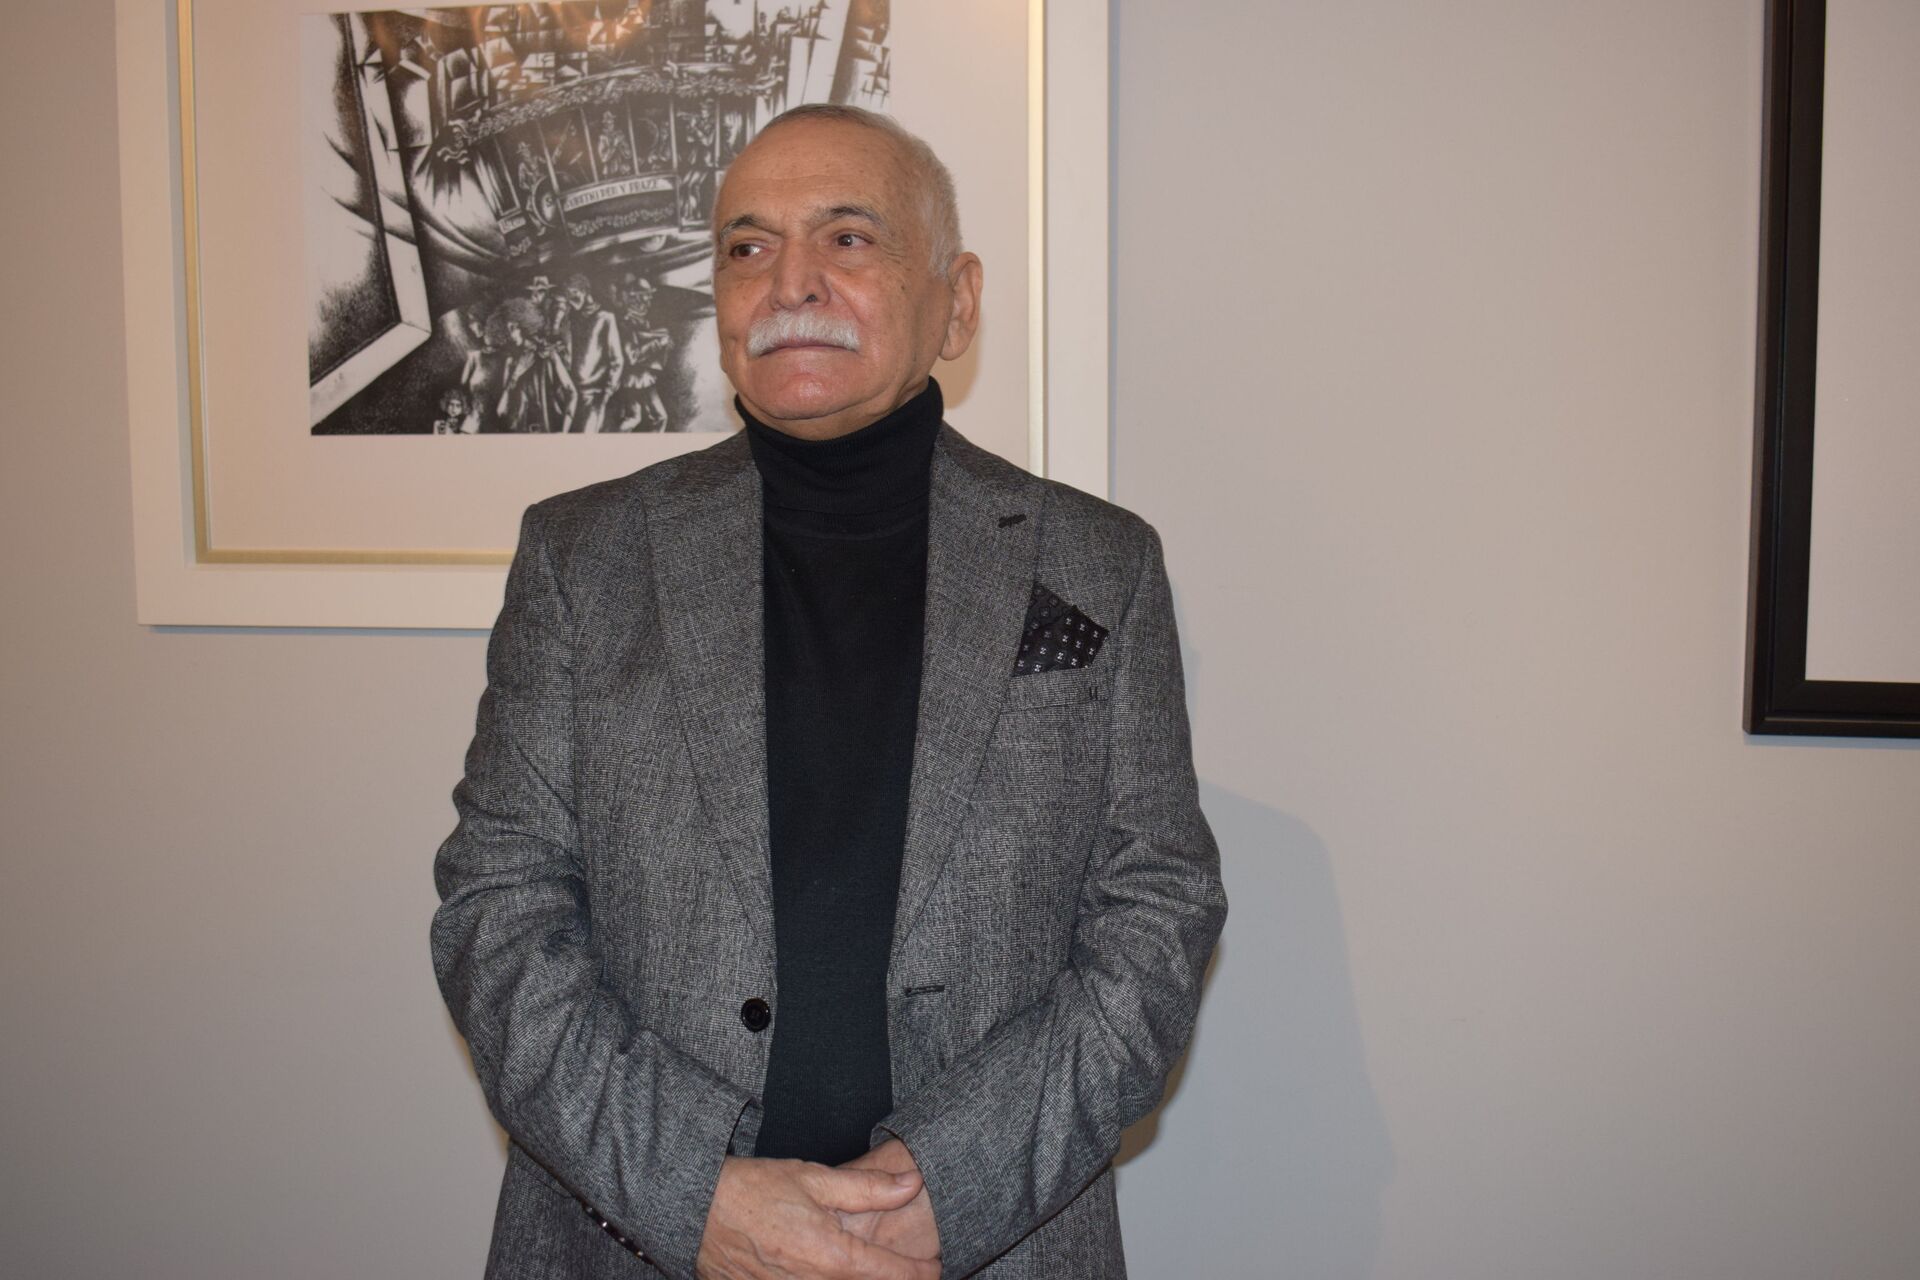 Дружба длиною в 40 лет: выставка вновь объединила азербайджанских и чешских художников - Sputnik Азербайджан, 1920, 12.02.2021